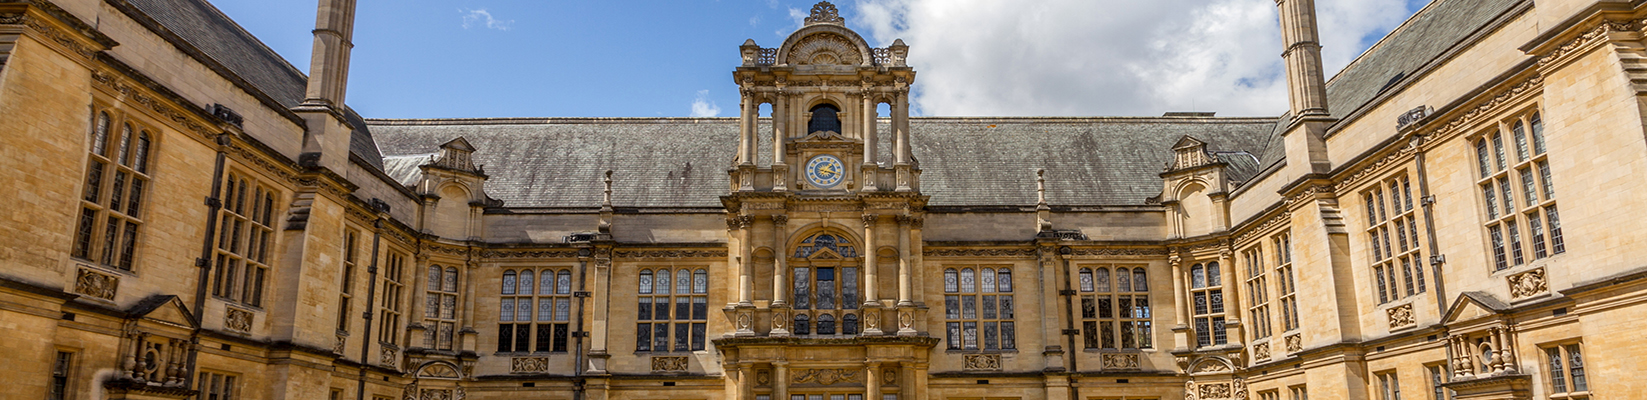 Free Tours Oxford